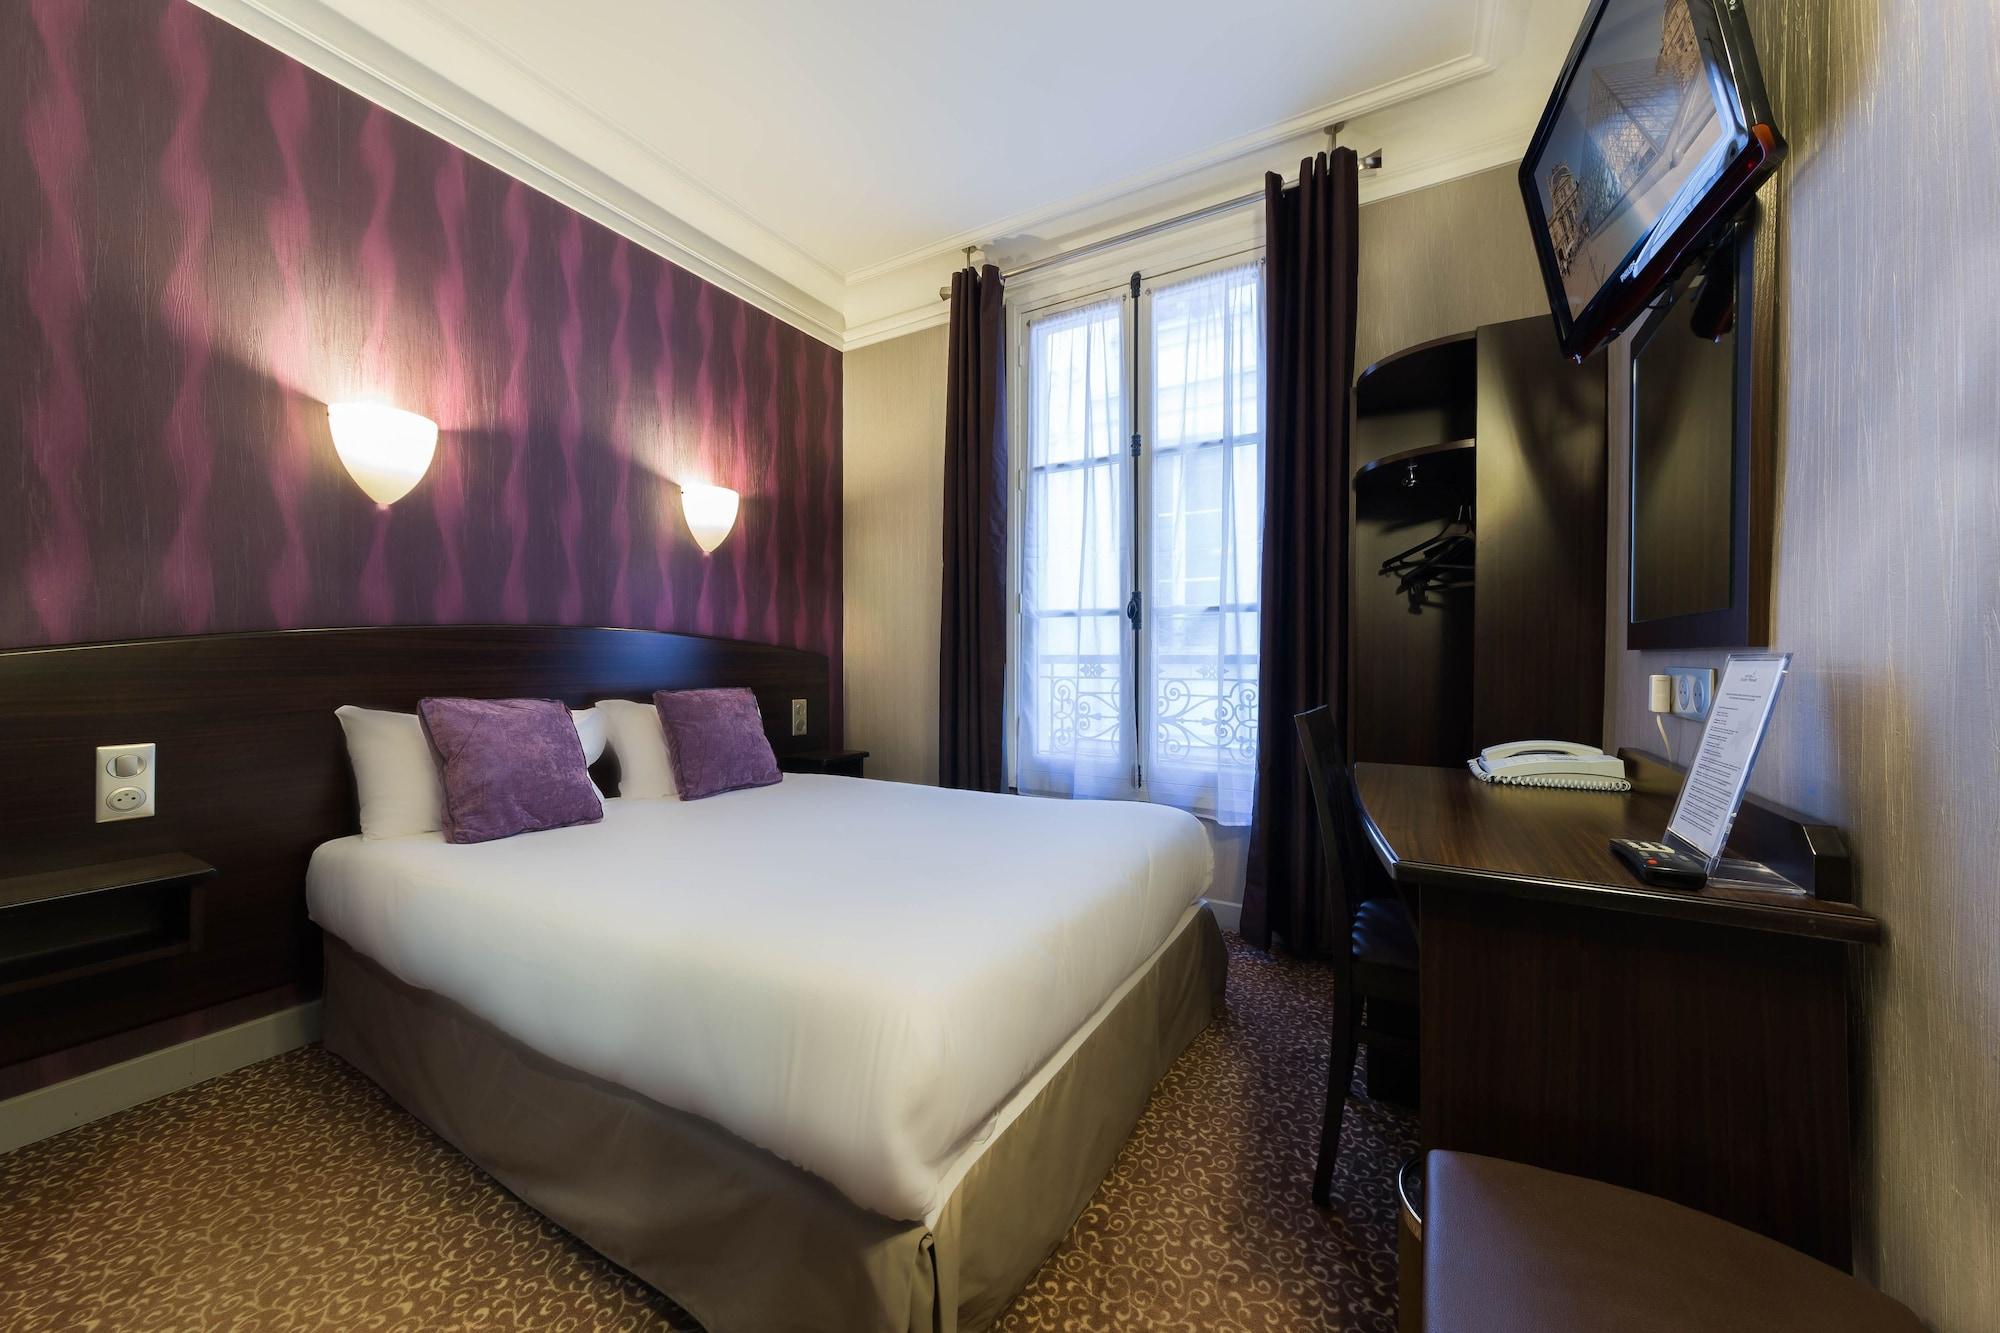 Hotel Victor Masse Paryż Zewnętrze zdjęcie